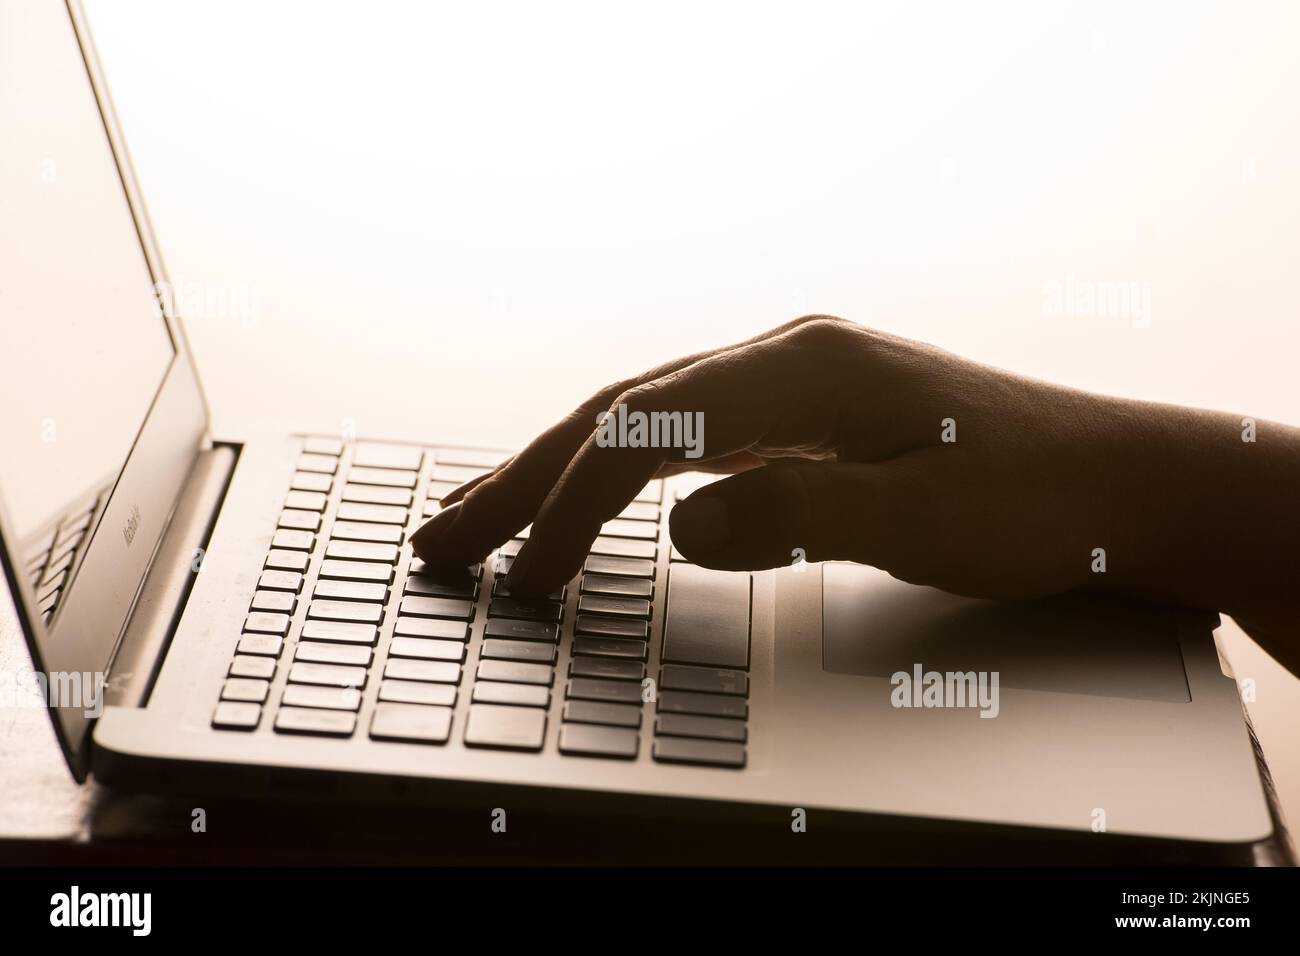 Die Regierung hat angekündigt, dass ein Dateifoto vom 04. April 03/17 einer Person, die einen Laptop benutzt, als das Teilen von „downblouse“-Bildern und pornografischen „dezephalen“ Bildern ohne Zustimmung zu Verbrechen wird. Stockfoto